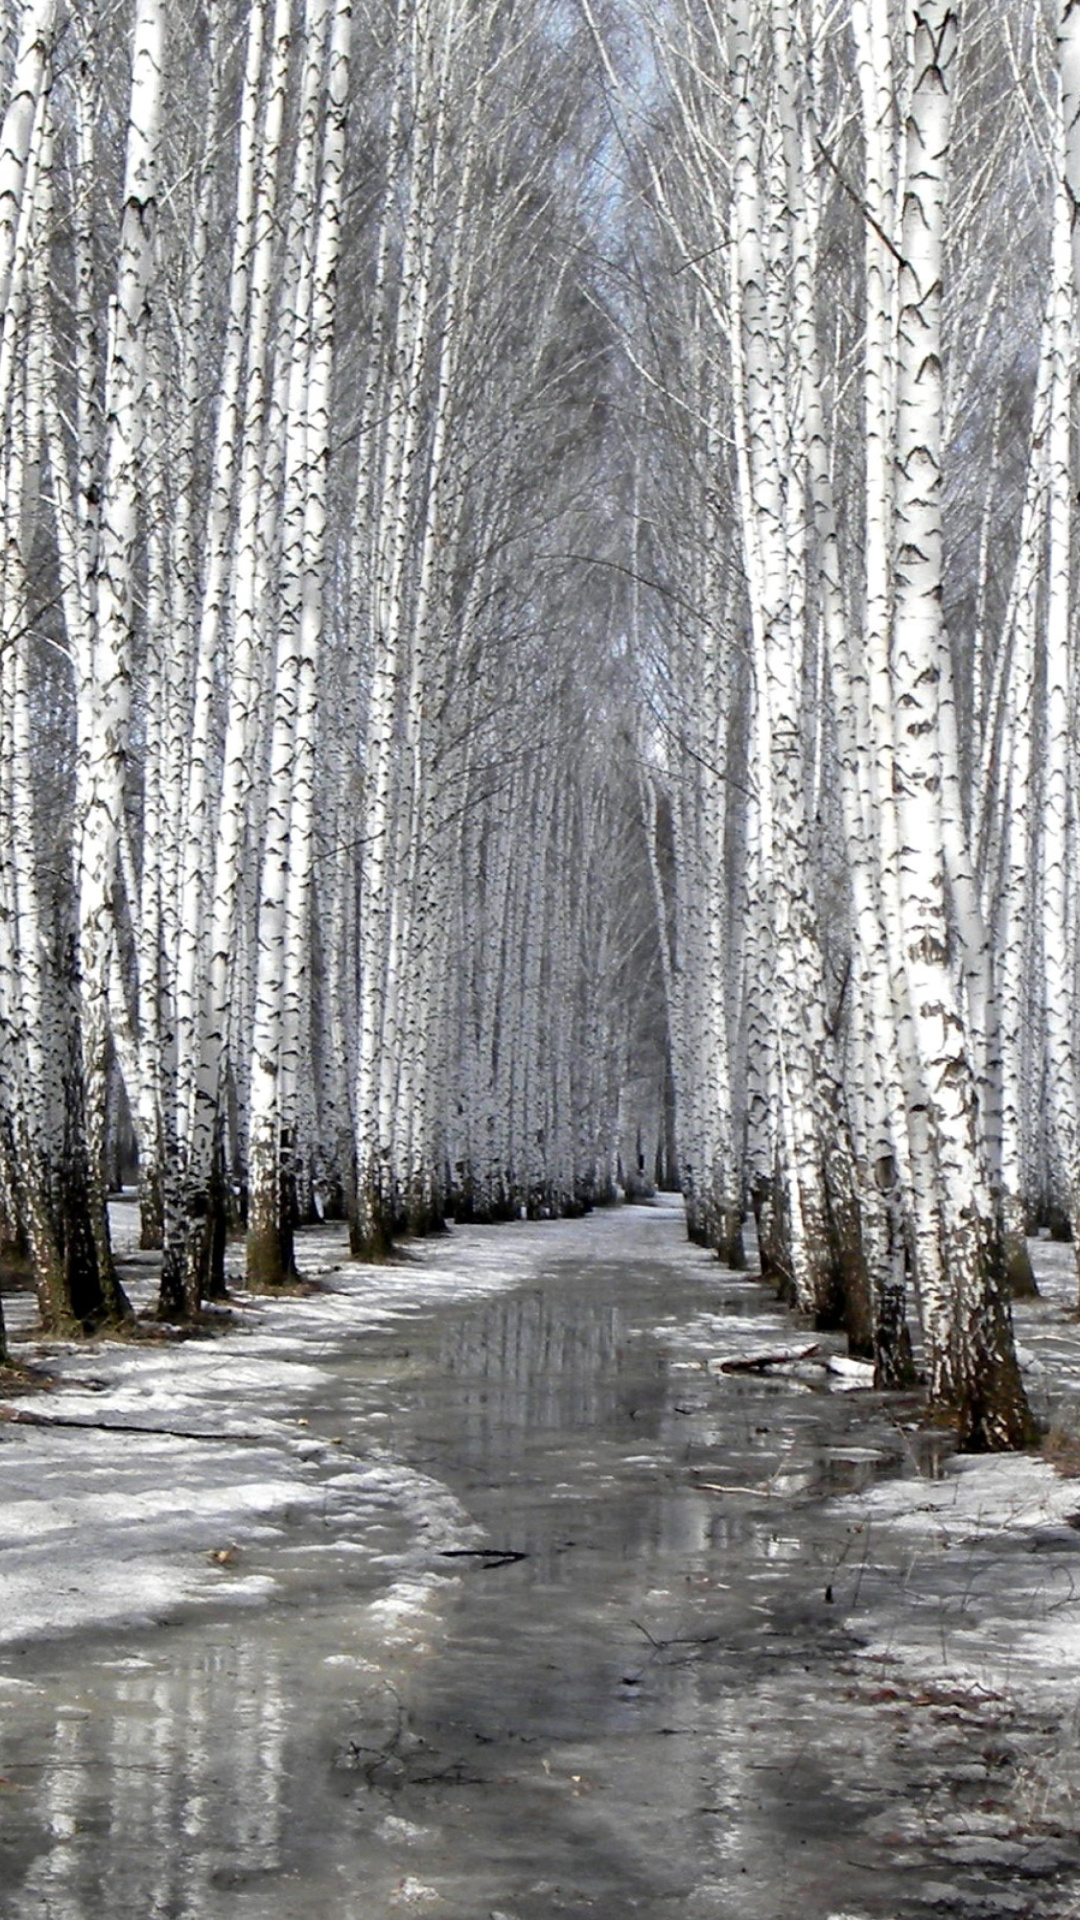 Birch forest in autumn screenshot #1 1080x1920